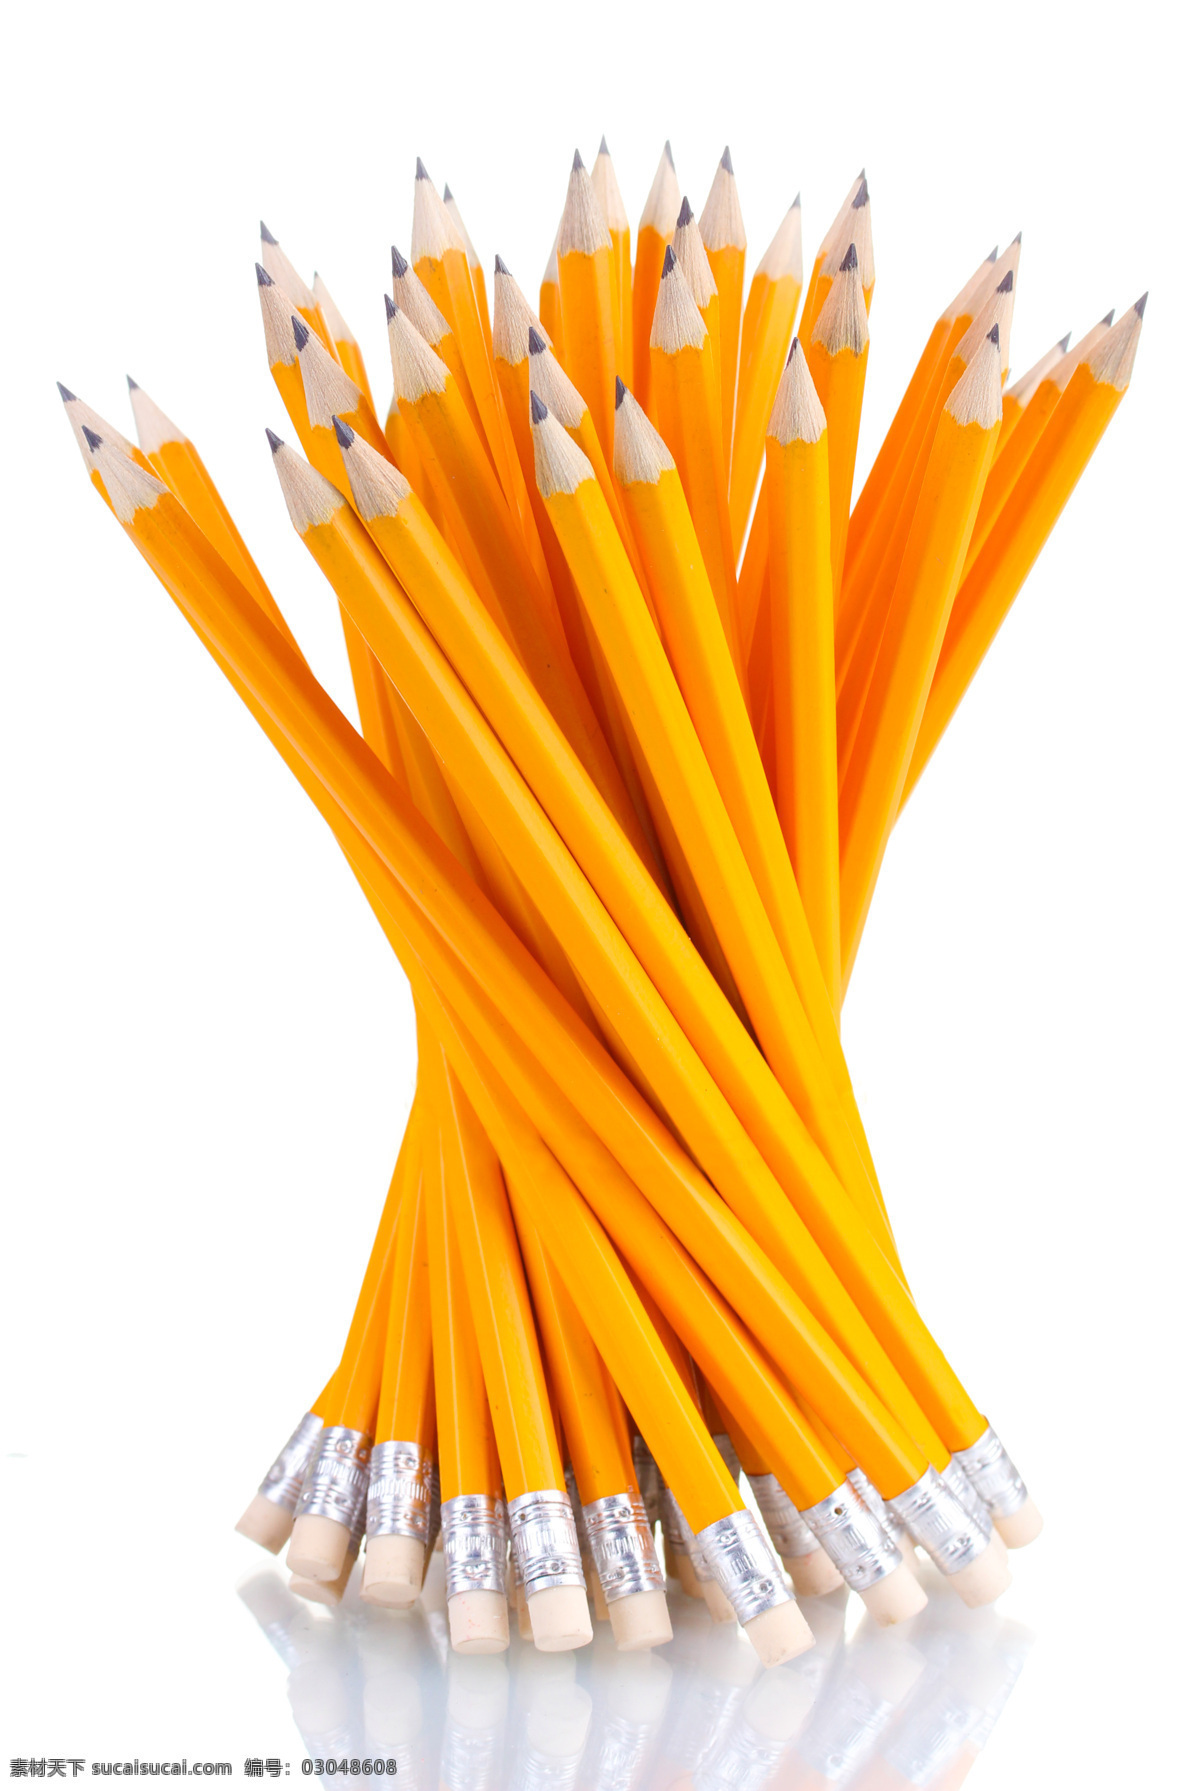 扎 铅笔 笔 绘画笔 彩色铅笔 文具 学习用品 办公学习 生活百科